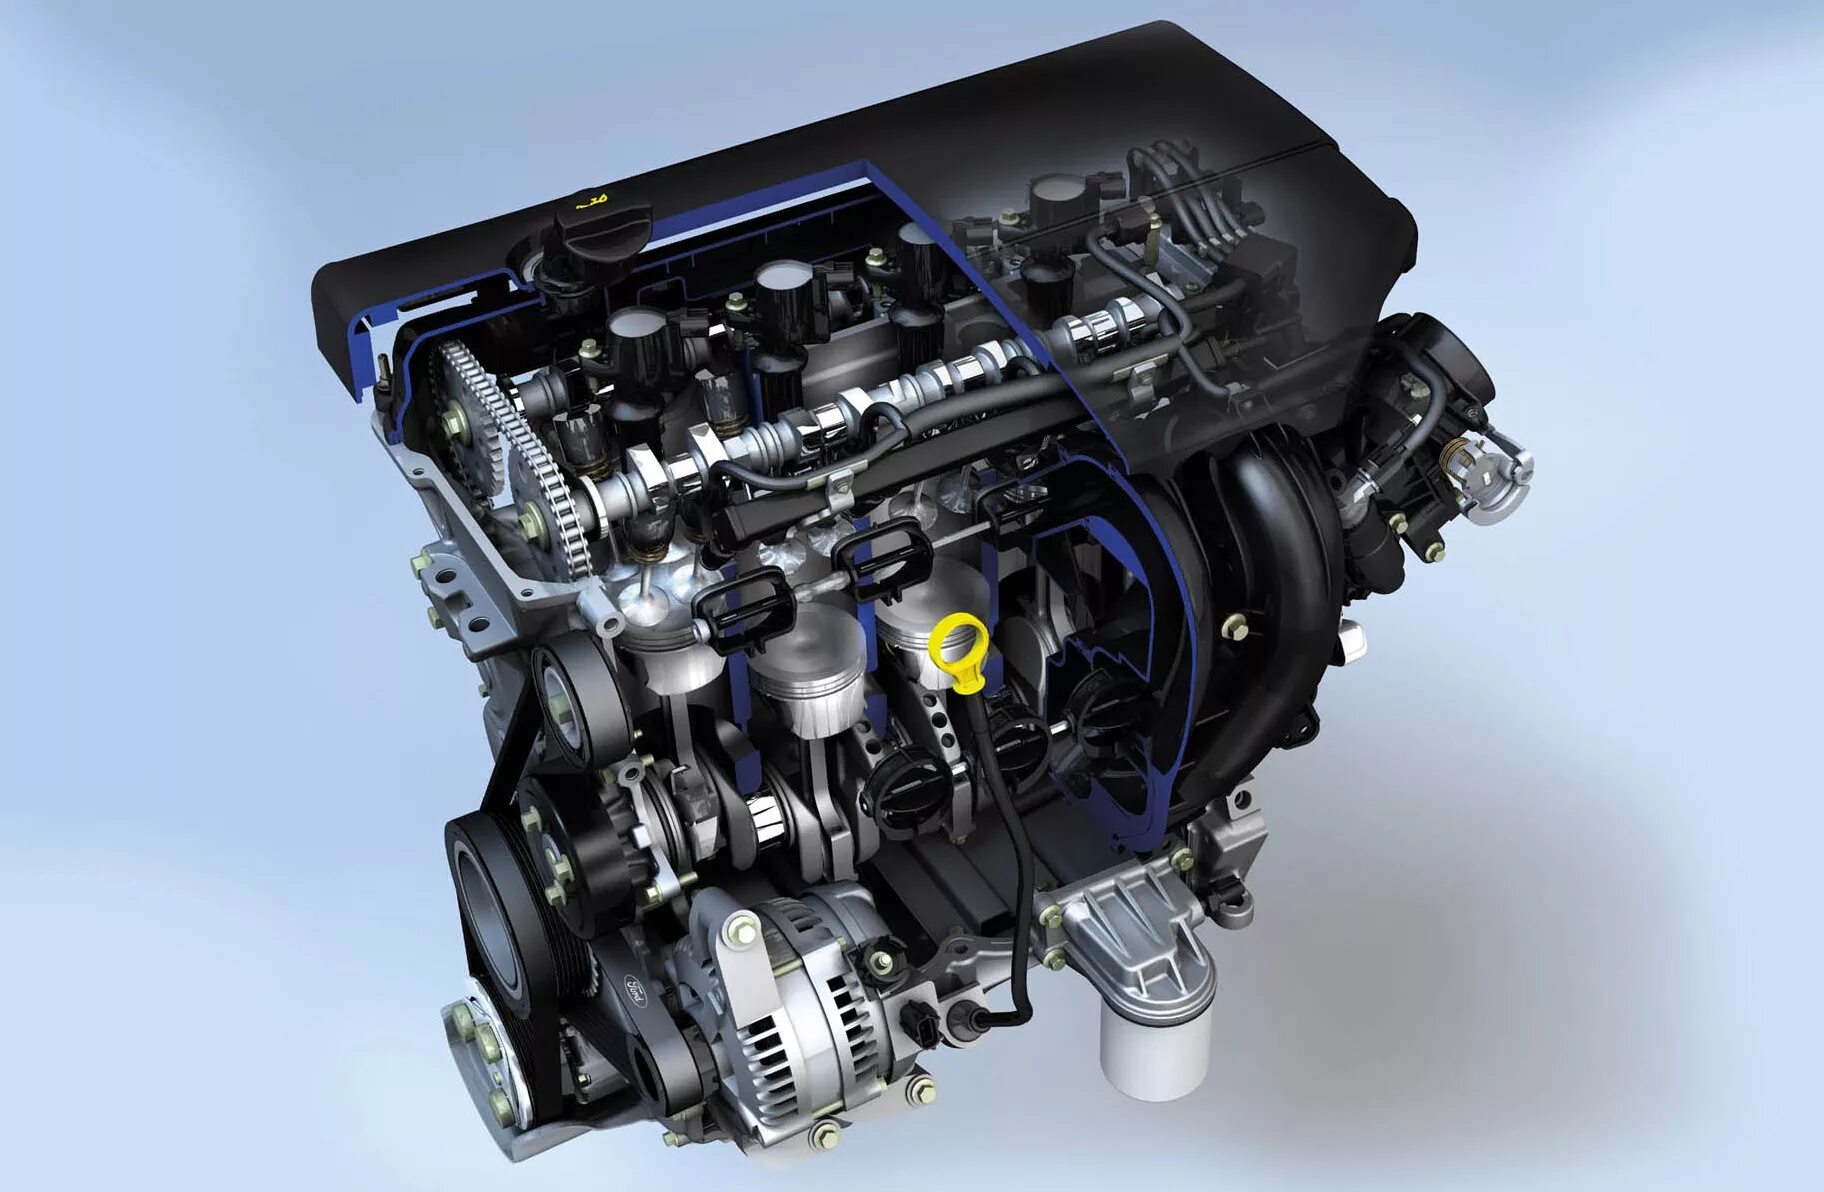 Мотор Форд фокус 1.8. Двигатель Форд фокус 2 1.8. Двигатель Форд фокус 2 1.8 125л.с. Мотор Форд фокус 2 2.0. Двигатель форд можно 1